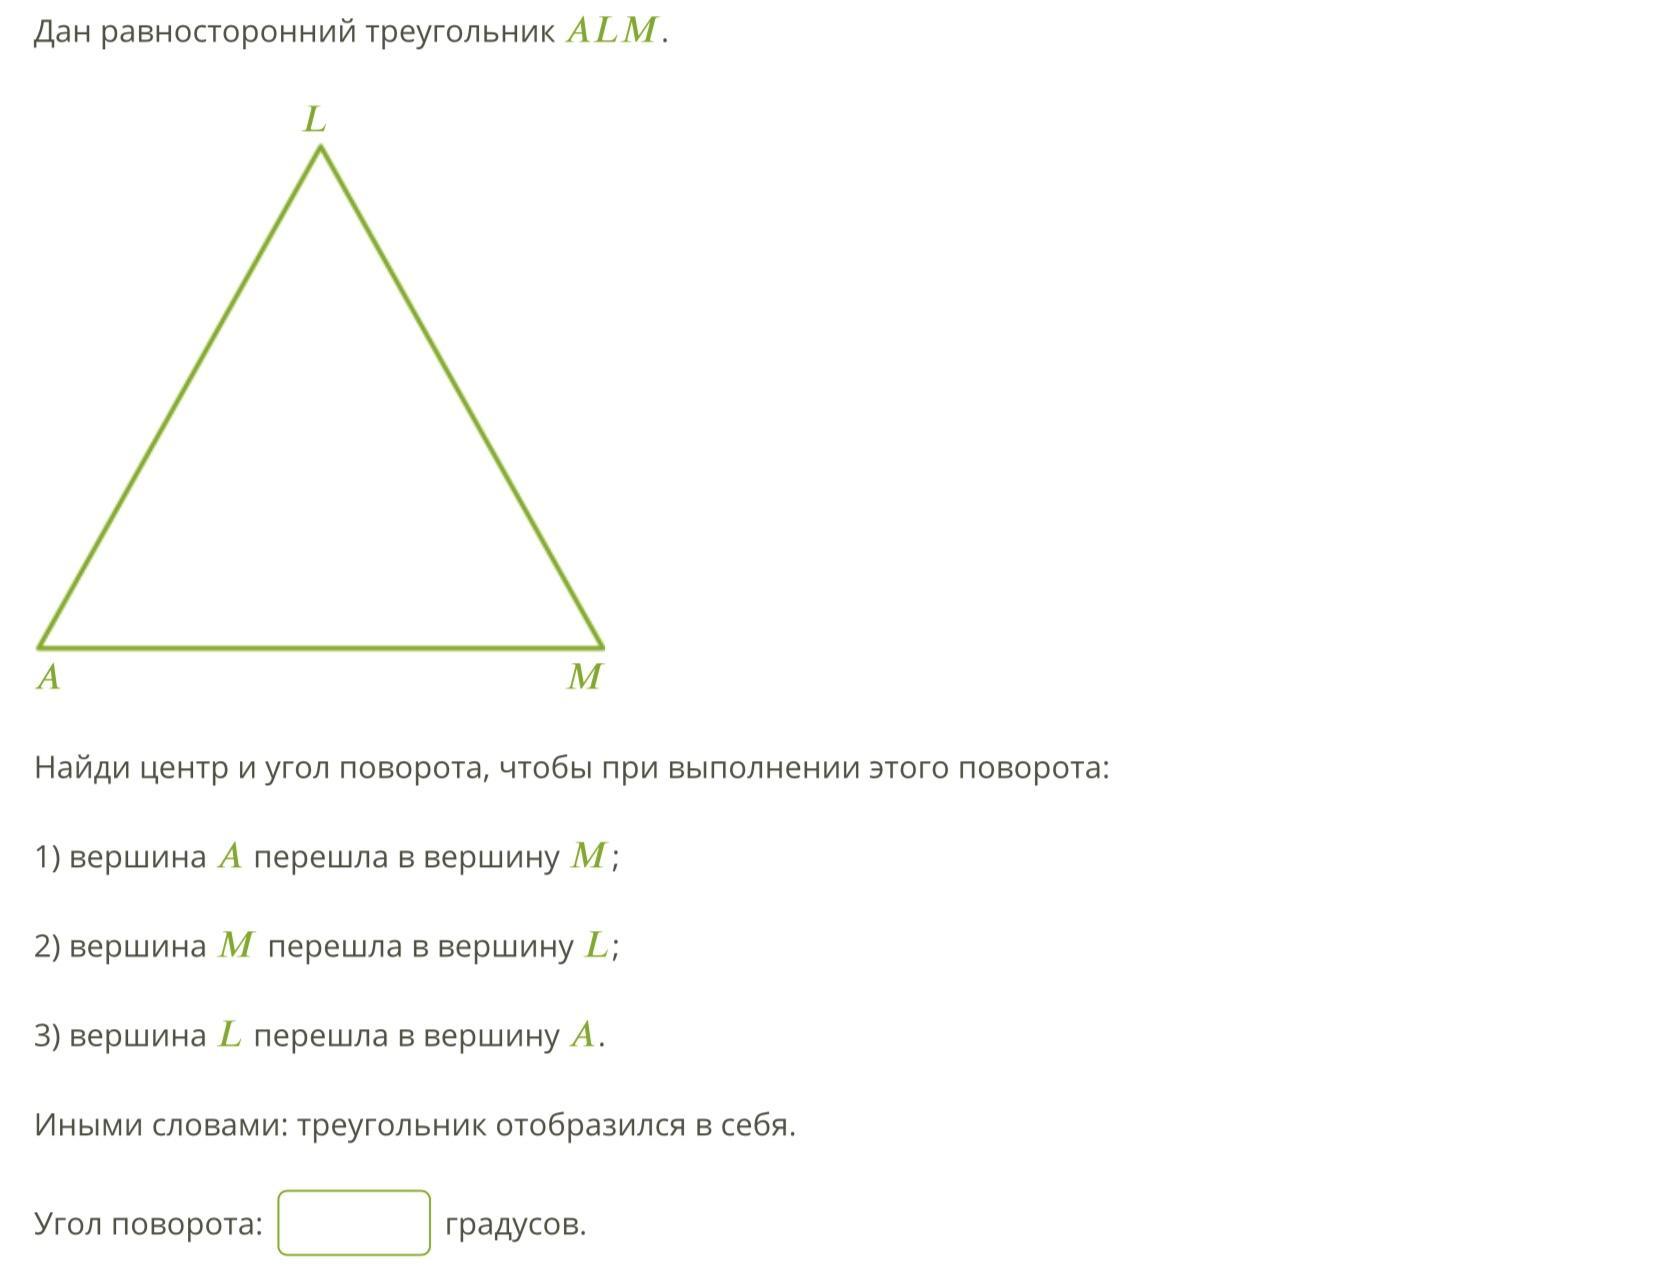 Слово равносторонний. Вершины равностороннего треугольника. Равносторонний треугольник в равностороннем треугольнике. Центр равностороннего треугольника. Углы равностороннего треугольника равны 60.